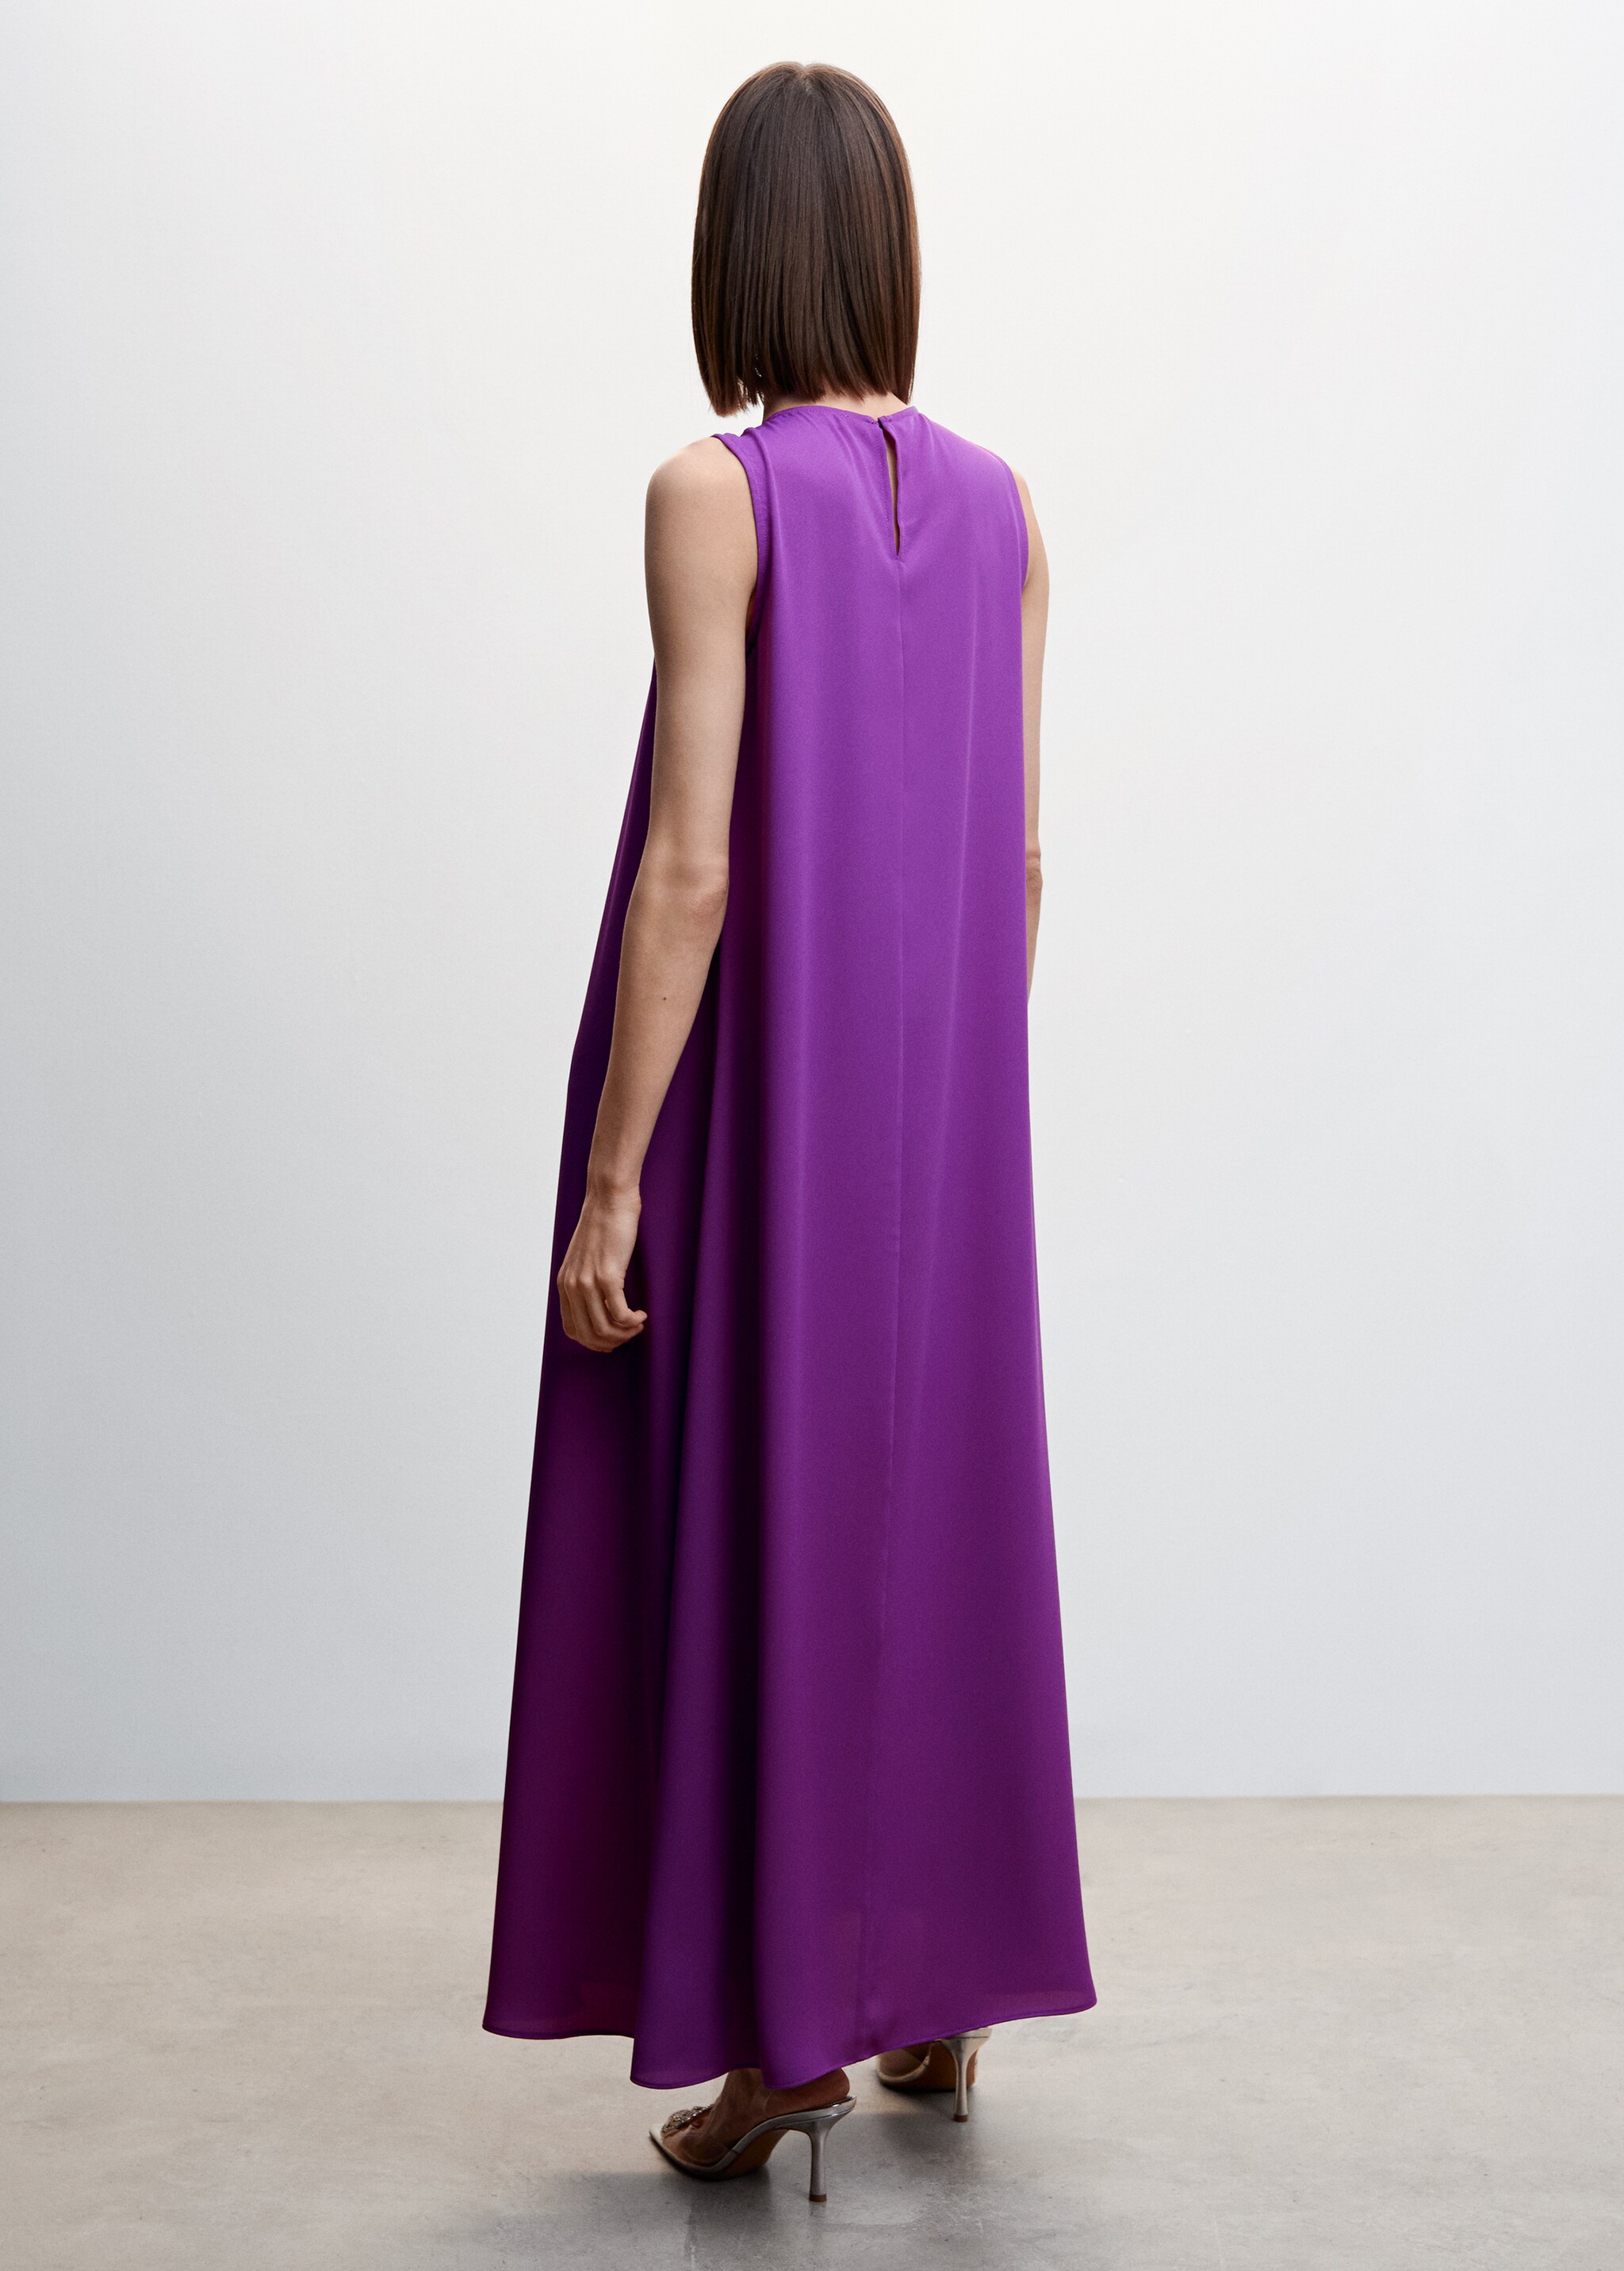 Kleid mit Zierausschnitt - Rückseite des Artikels